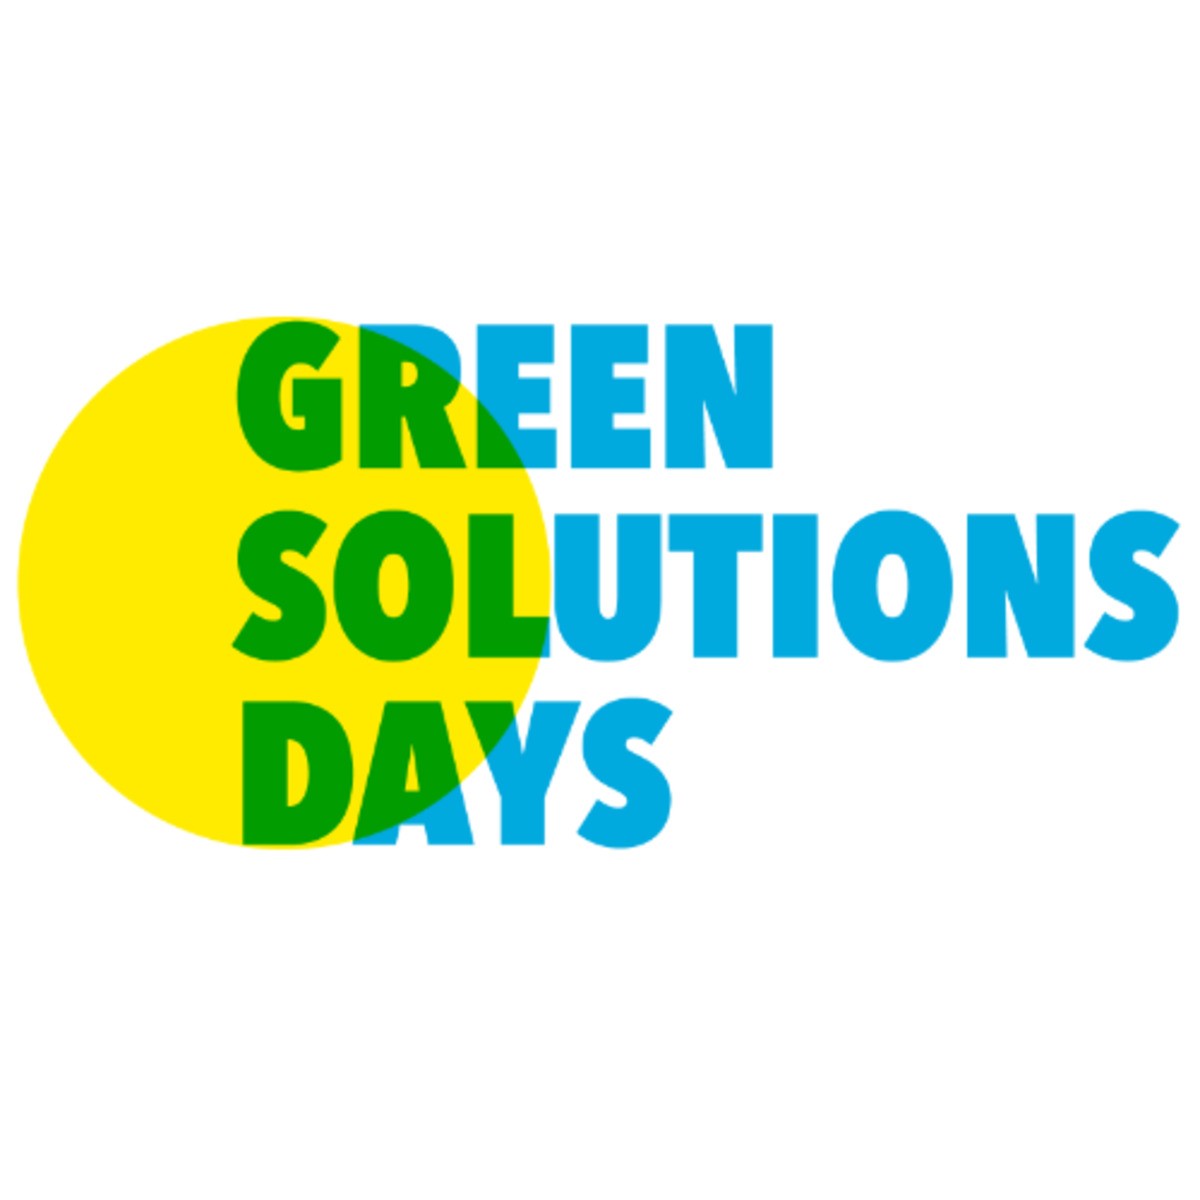 Les Green Solutions Days, le rendez-vous des transitionneurs(ses)